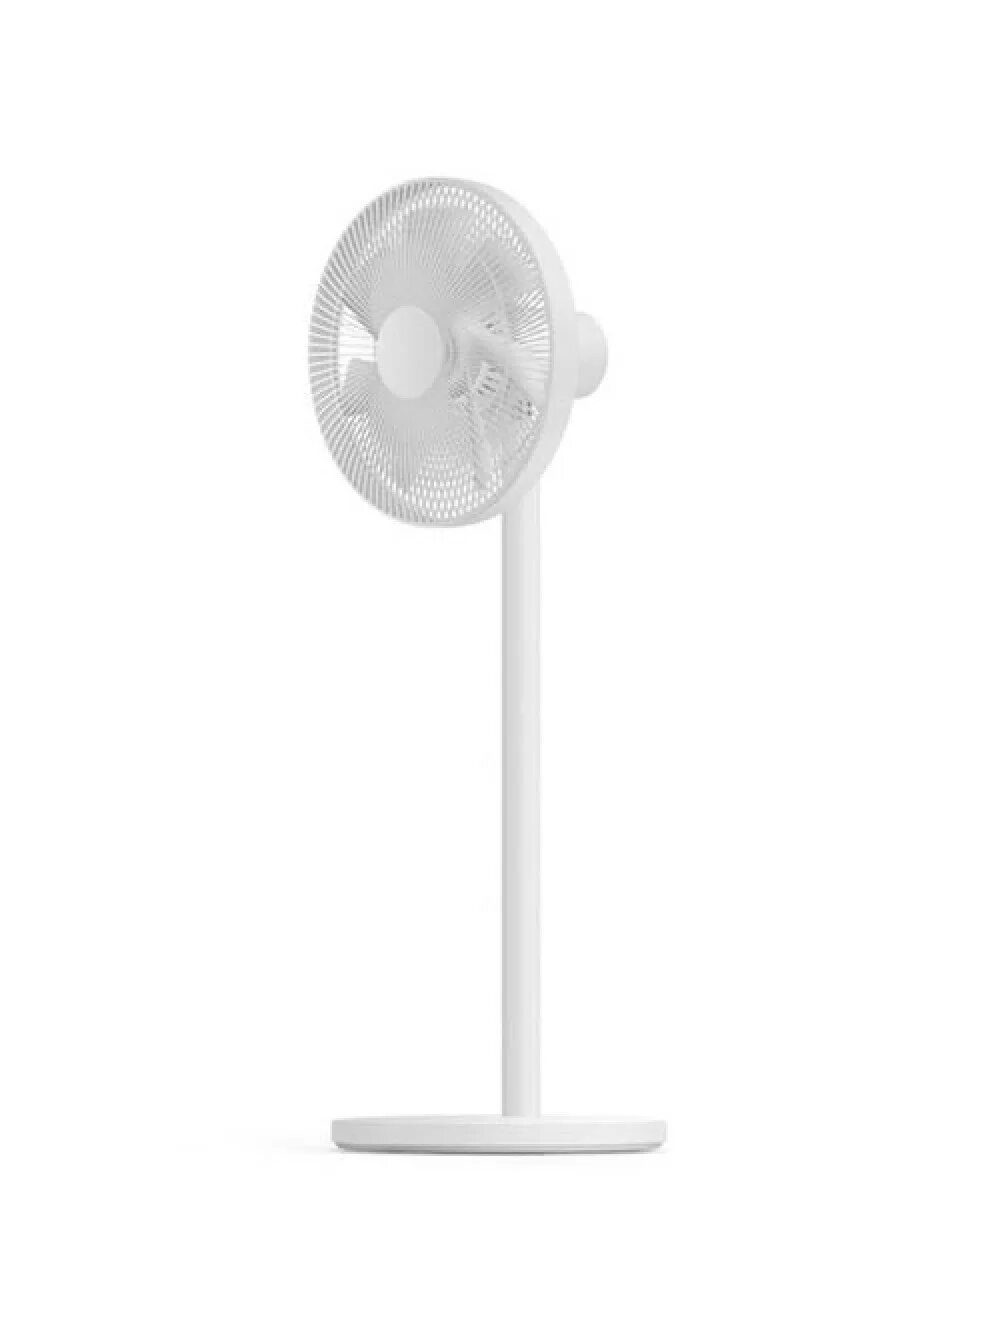 Smart standing fan. Вентилятор Xiaomi Mijia DC Inverter Fan 1x. Вентилятор Xiaomi Mijia DC variable Frequency Floor Fan 2 White (bplds02dm). Xiaomi Smart standing Fan 2. Вентилятор mi Smart standing Fan 2 eu.